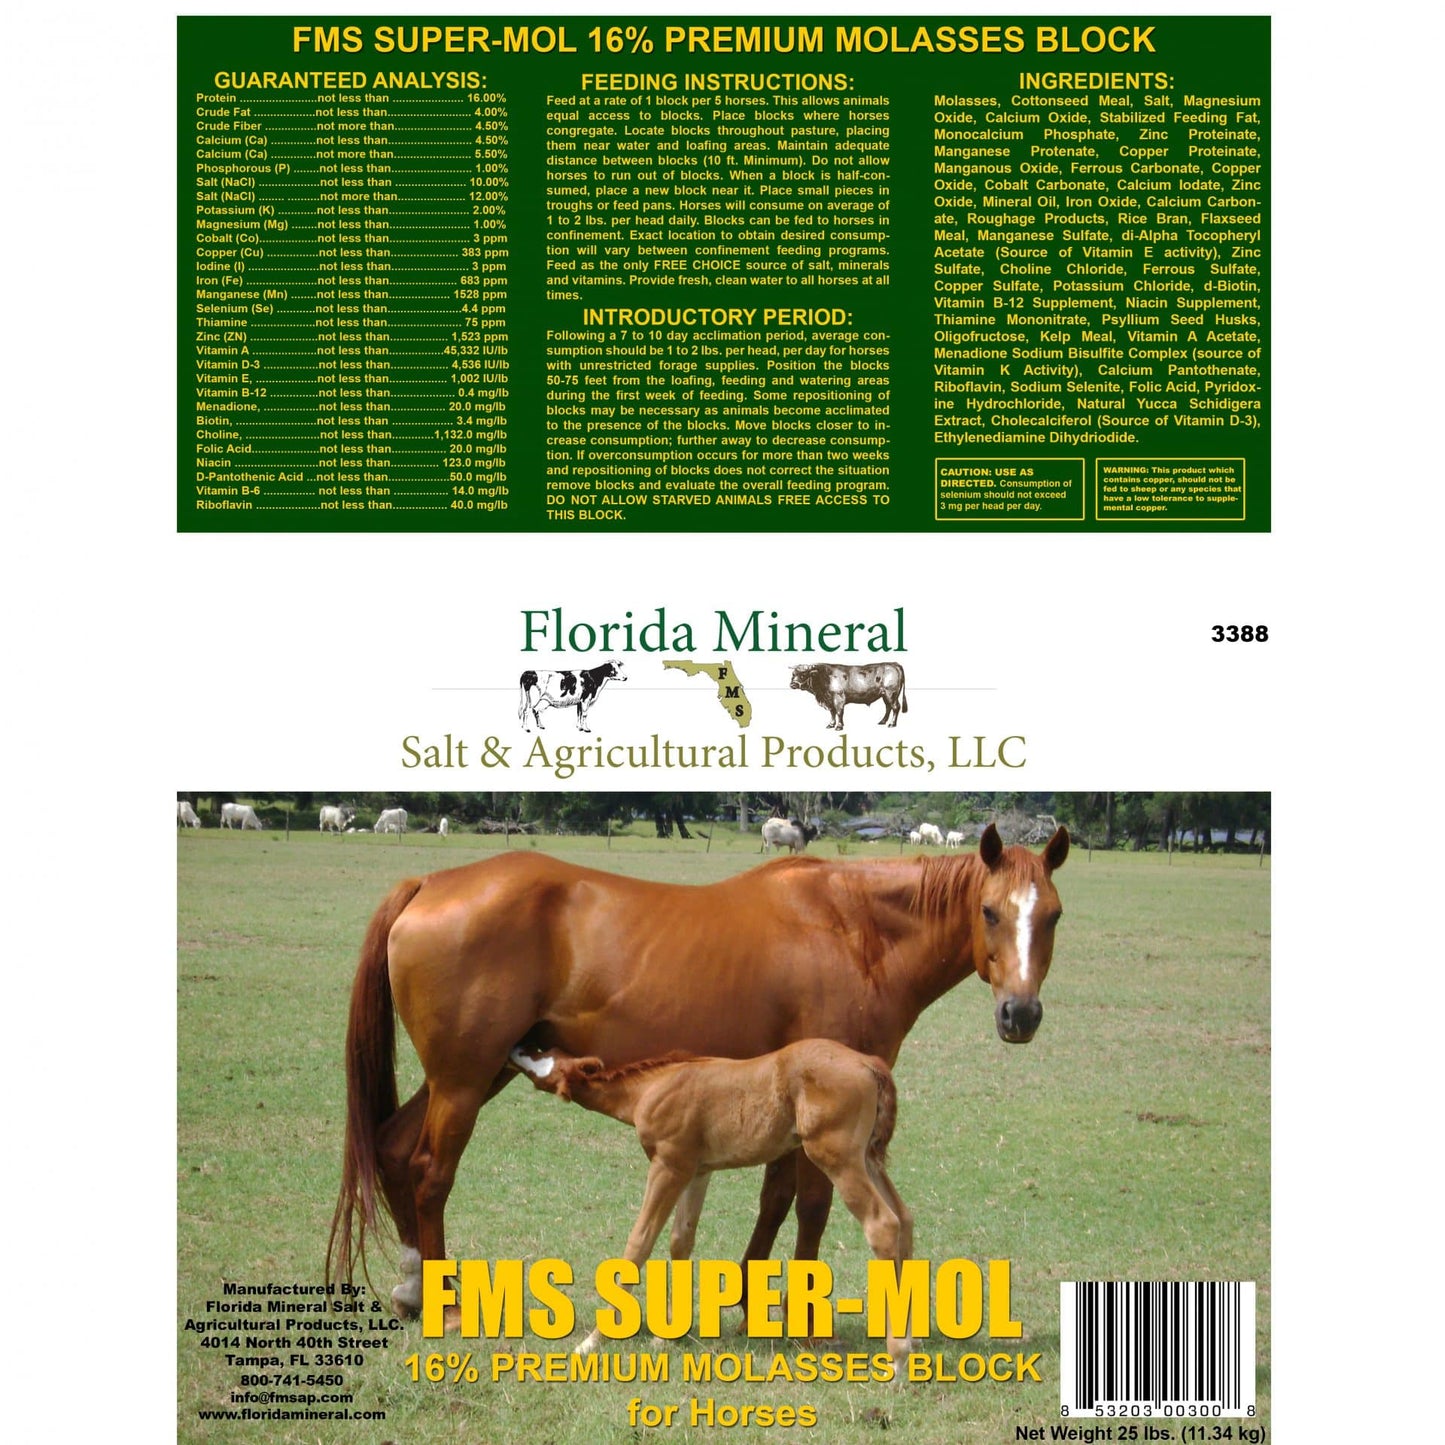 Super-Mol 16% Premium Molasses for Horses (25lb Block)